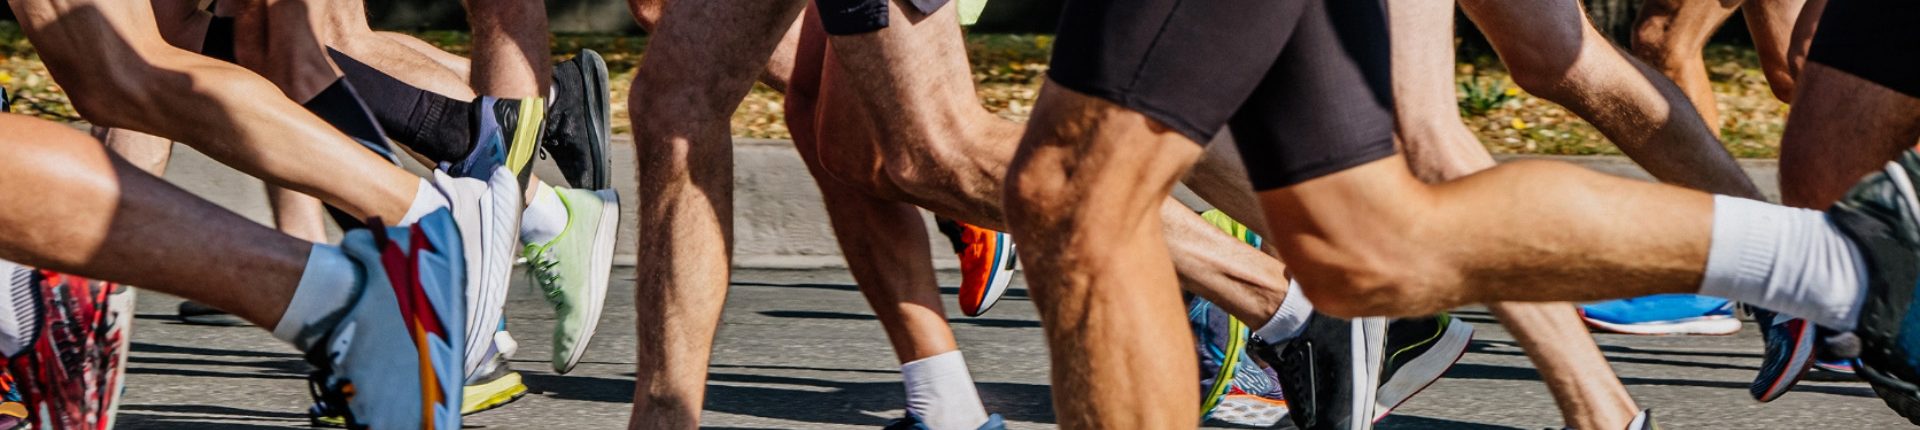 Flamme olympique, course en ligne, marathon… Découvrez  le programme à Sèvres !